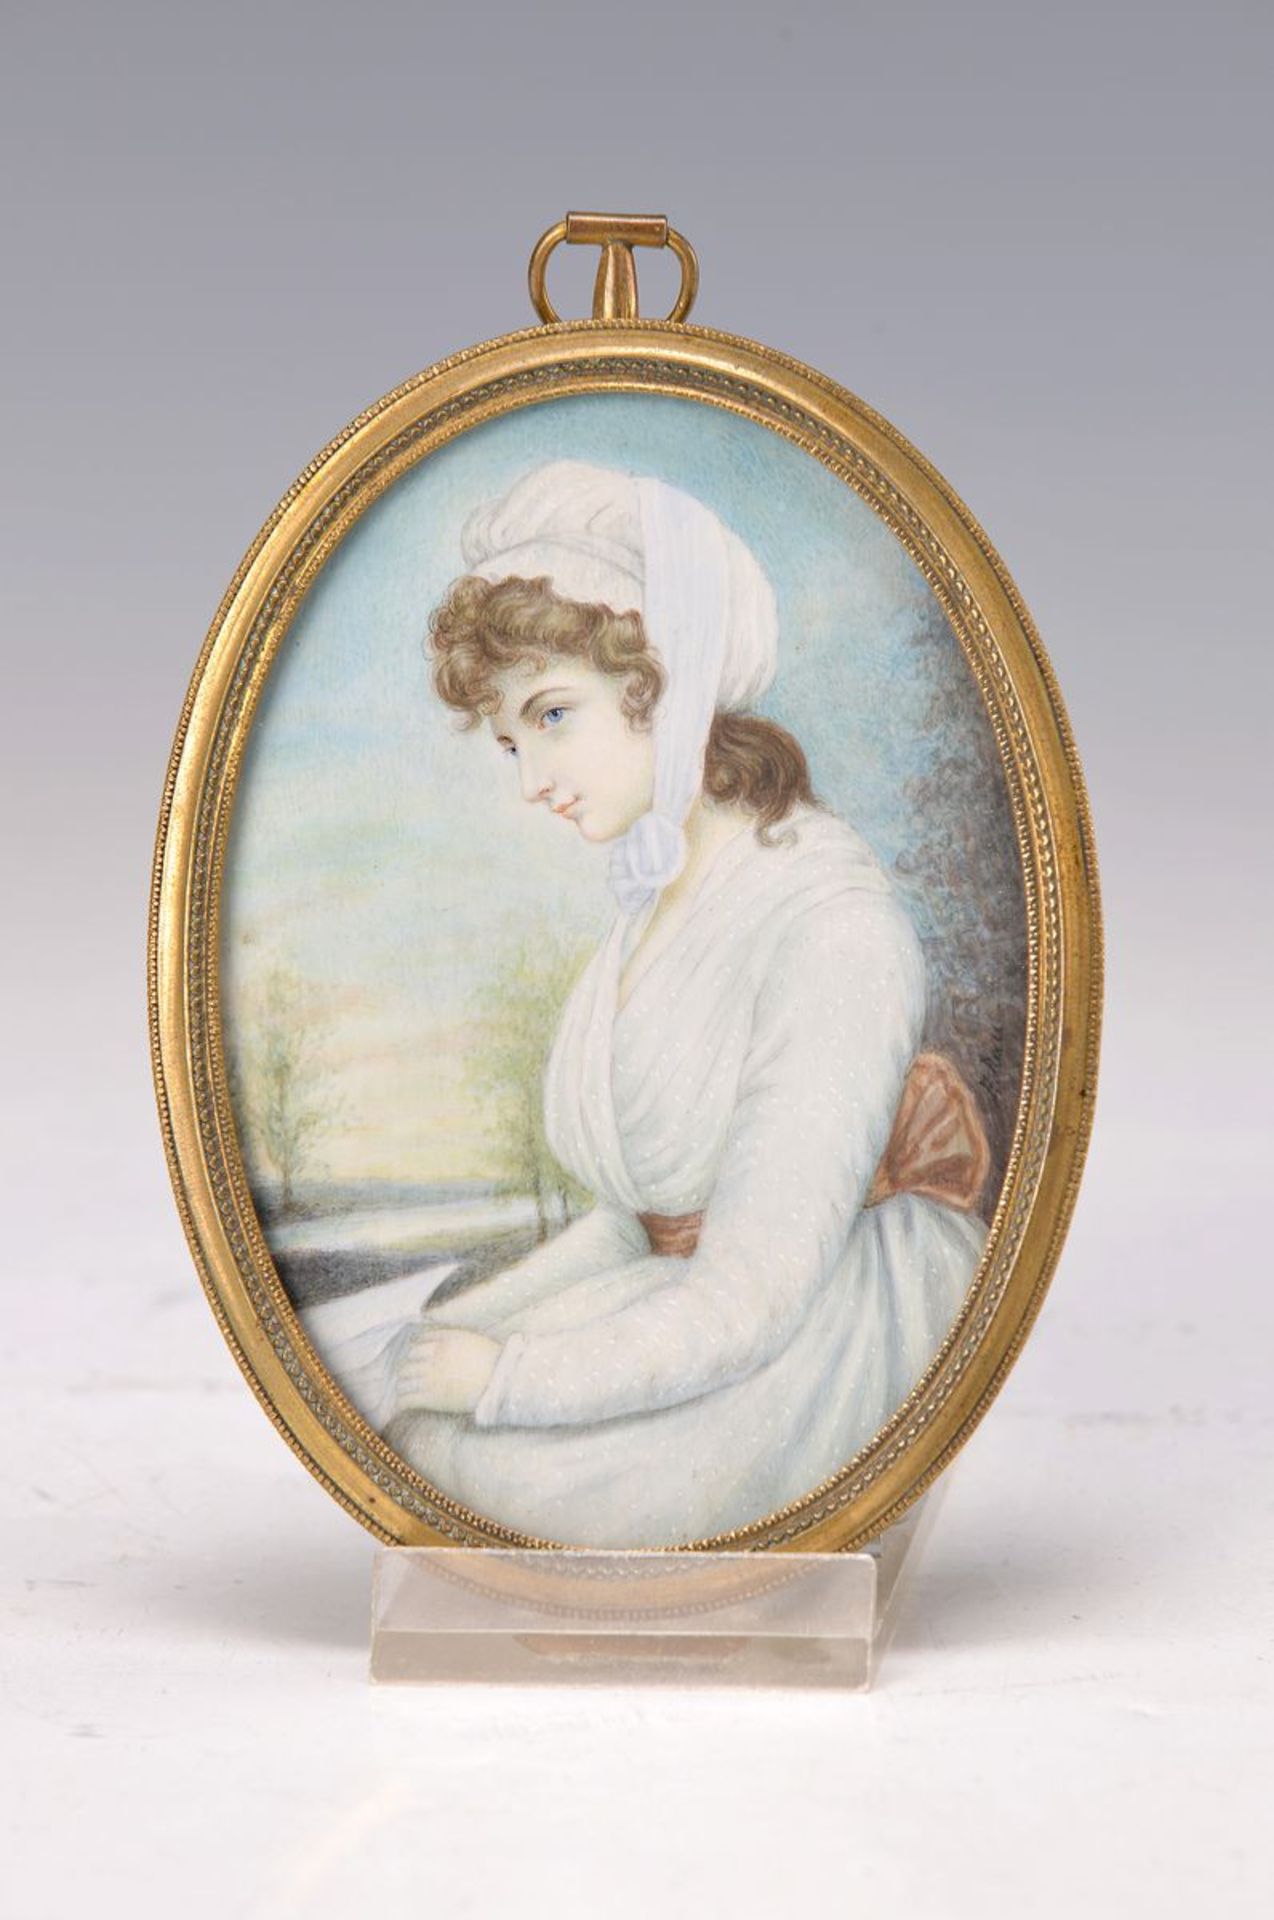 E. Rau, Miniaturmalerei, 19. Jh, sitzende junge Frau mit weißem Kleid und Haube, rechts signiert